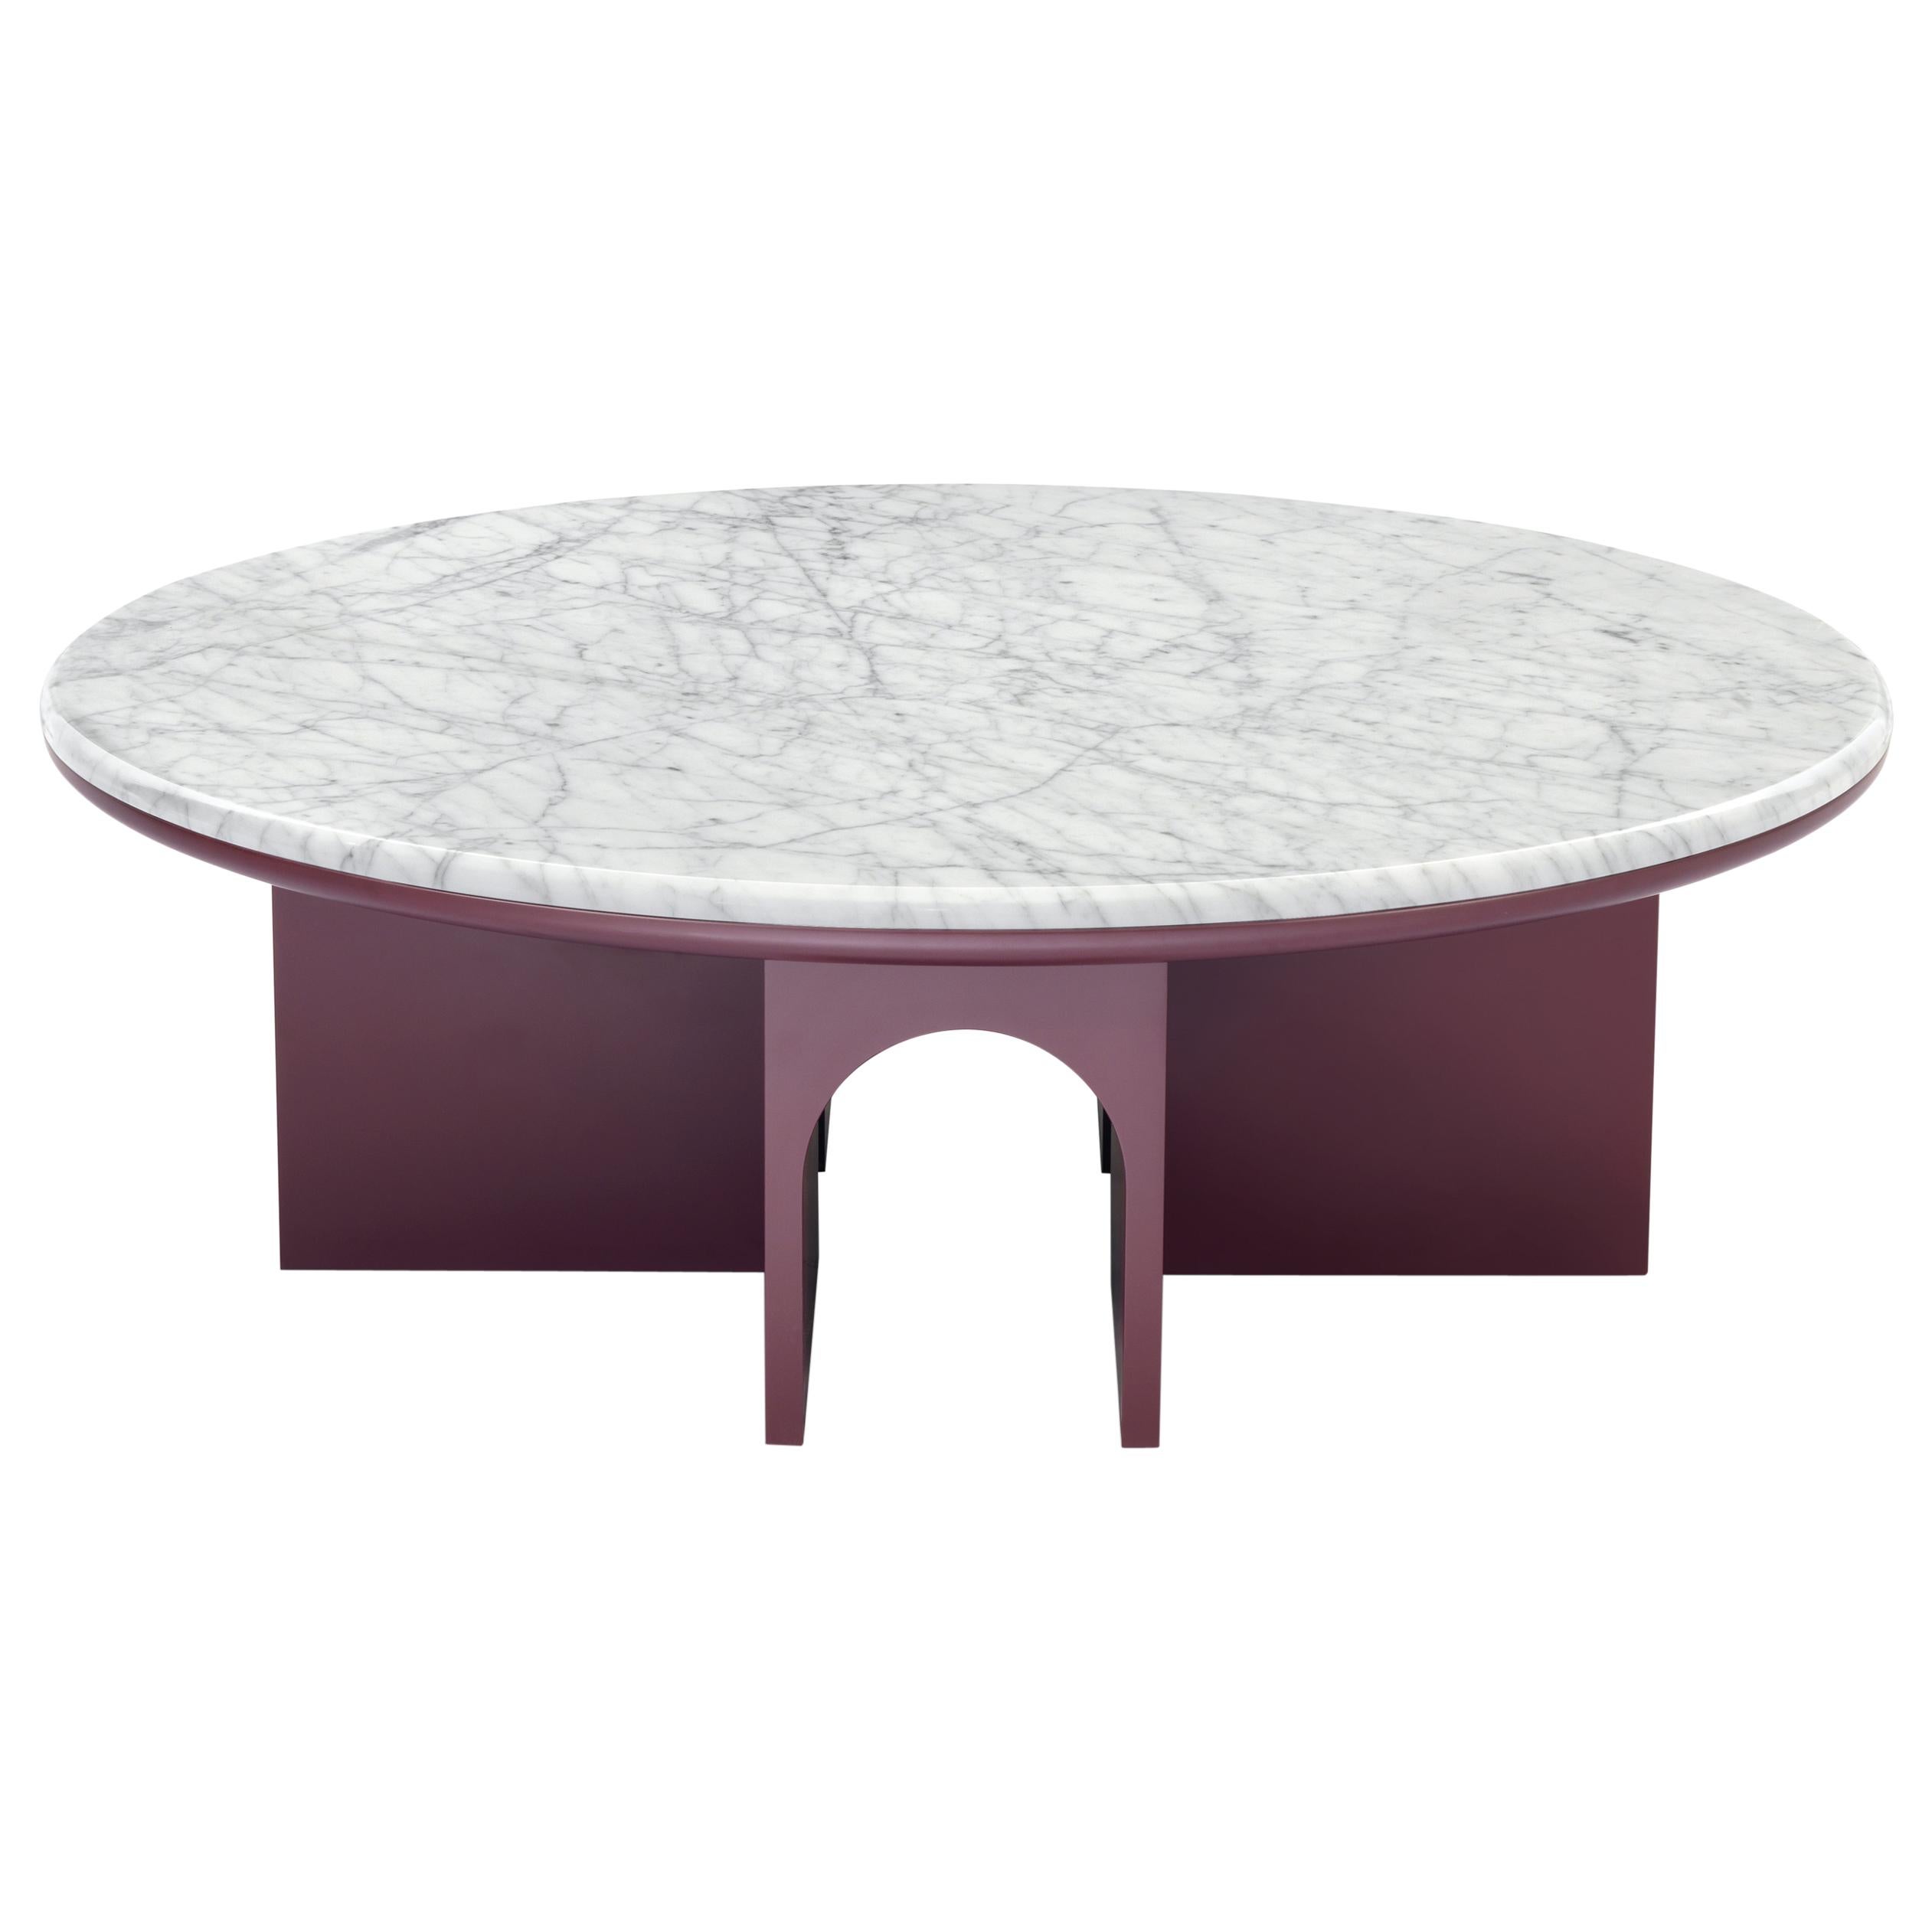 Petite table Arflex Arcolor de 100 cm avec plateau en marbre de Carrare blanc par Jaime Hayon